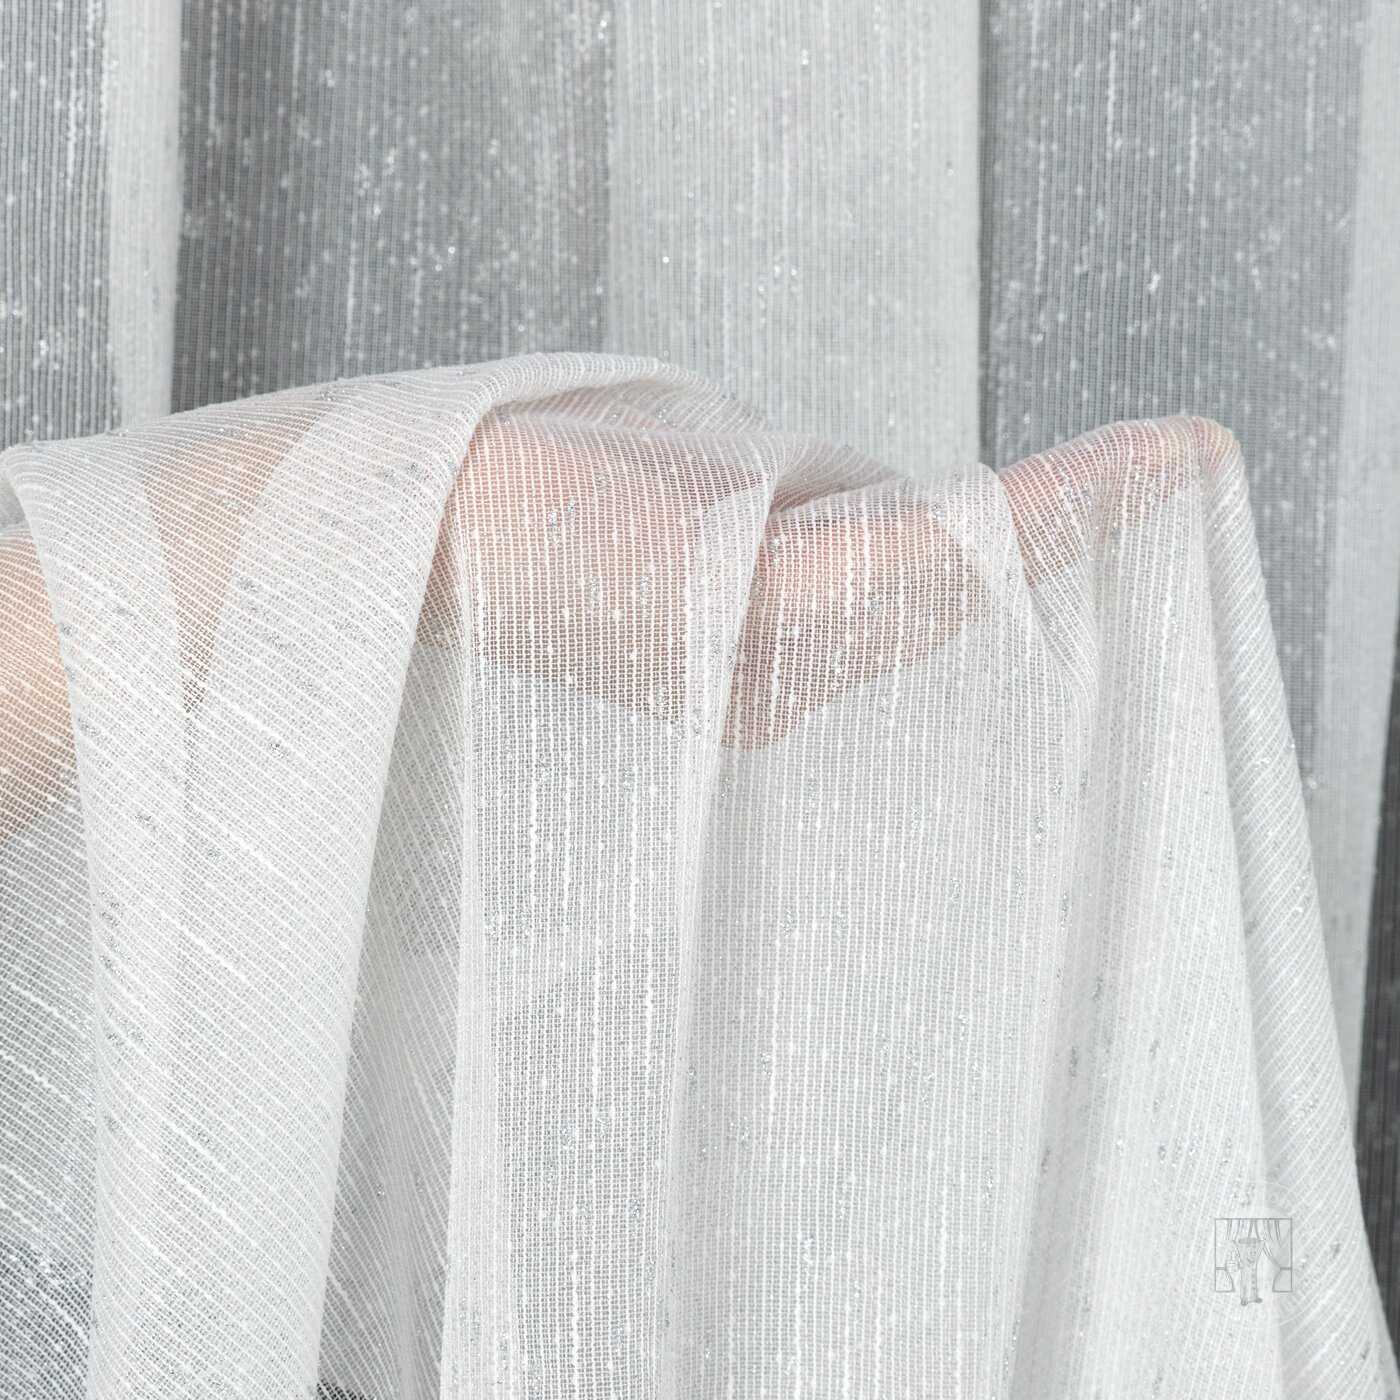 Záclona KELLY na páske biela so striebornou niťou 140x270cm